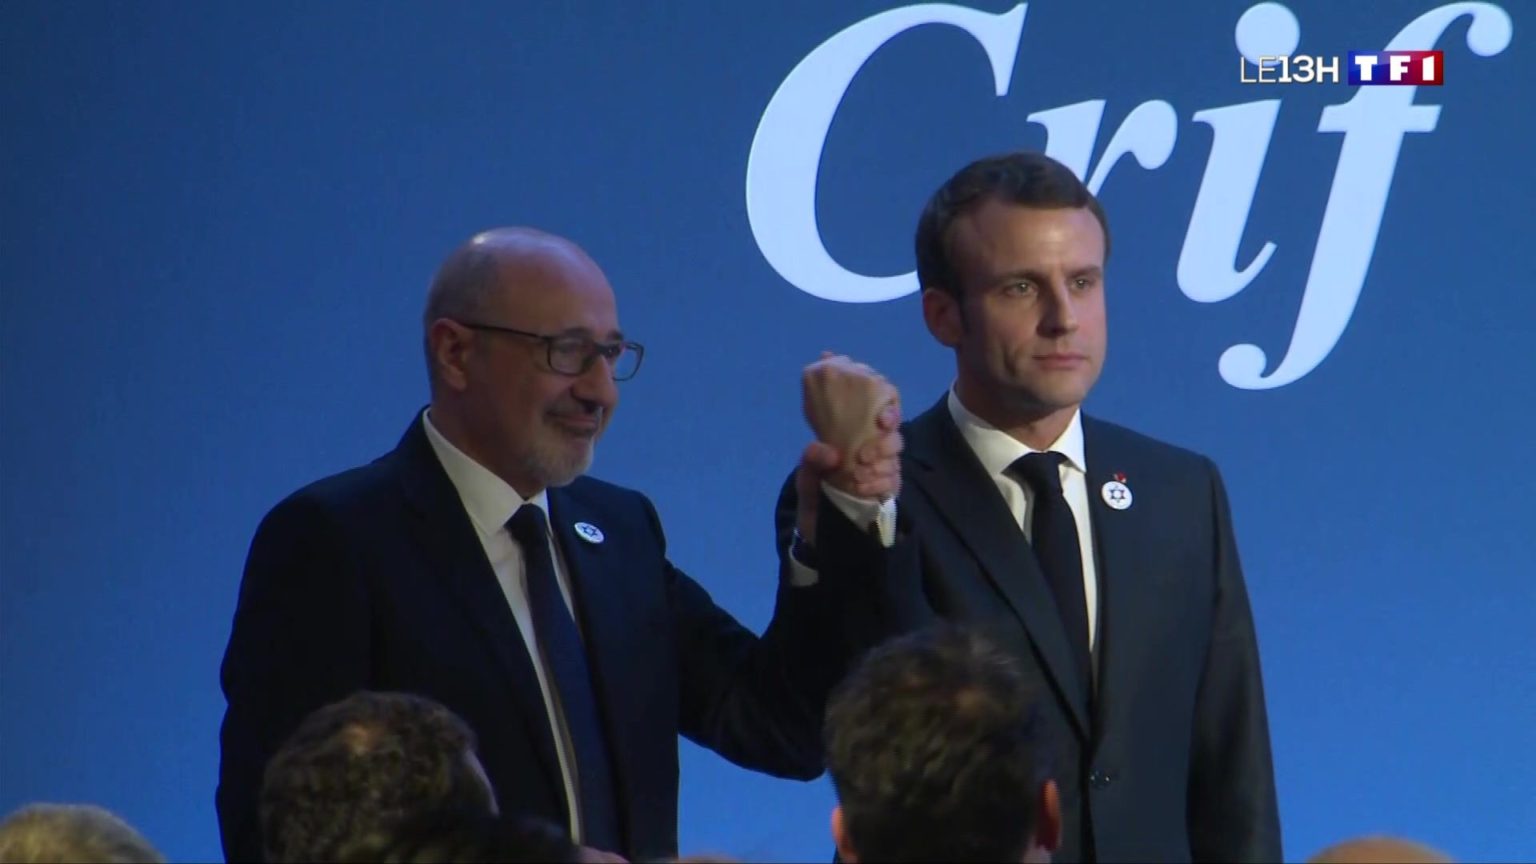 France-Sondage : Macron et le CRIF ont gagné, 72% des citoyens ne veulent plus des manifs pro-palestiniennes